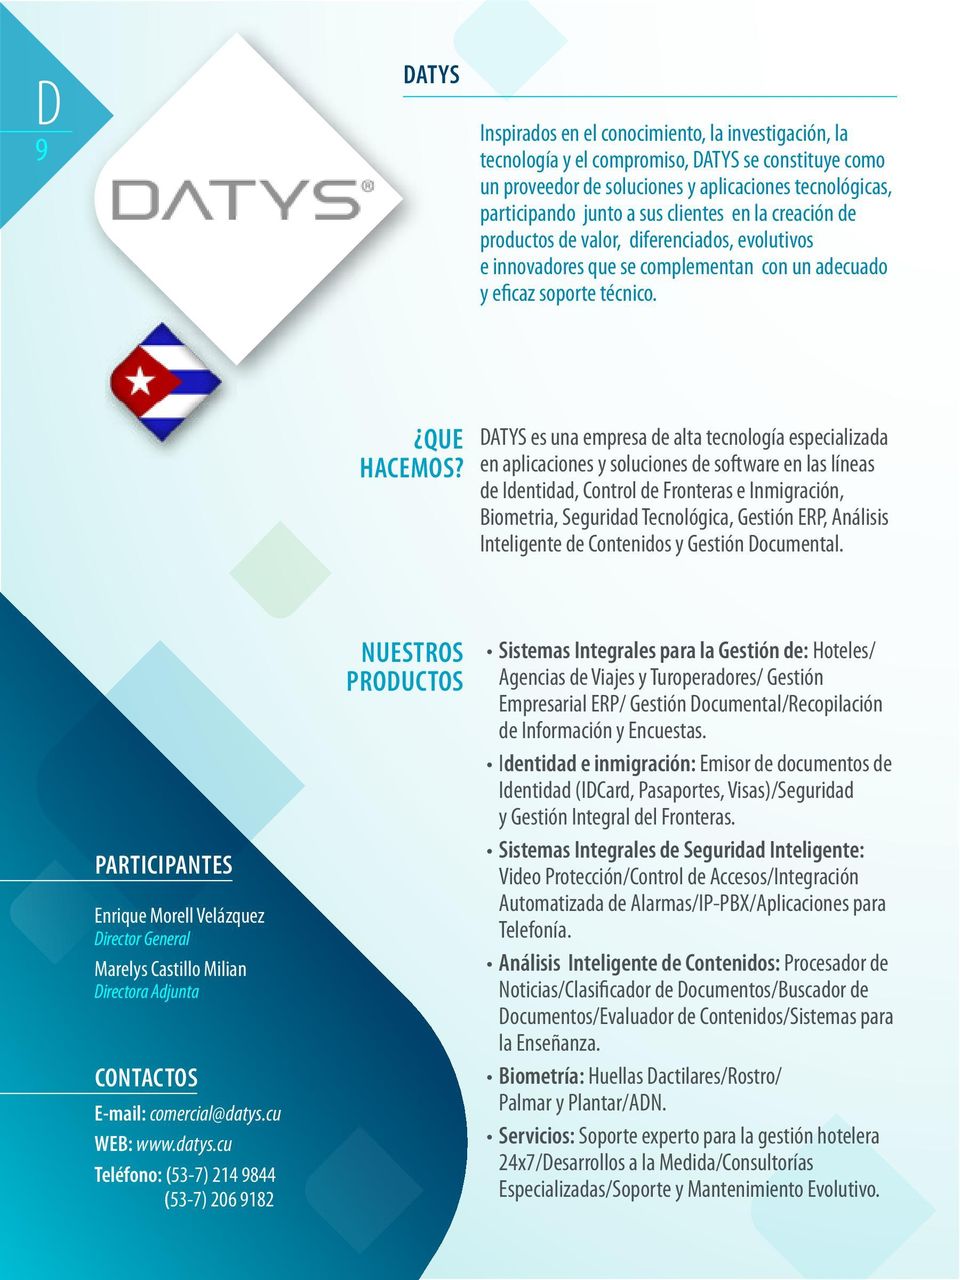 DATYS es una empresa de alta tecnología especializada en aplicaciones y soluciones de software en las líneas de Identidad, Control de Fronteras e Inmigración, Biometria, Seguridad Tecnológica,